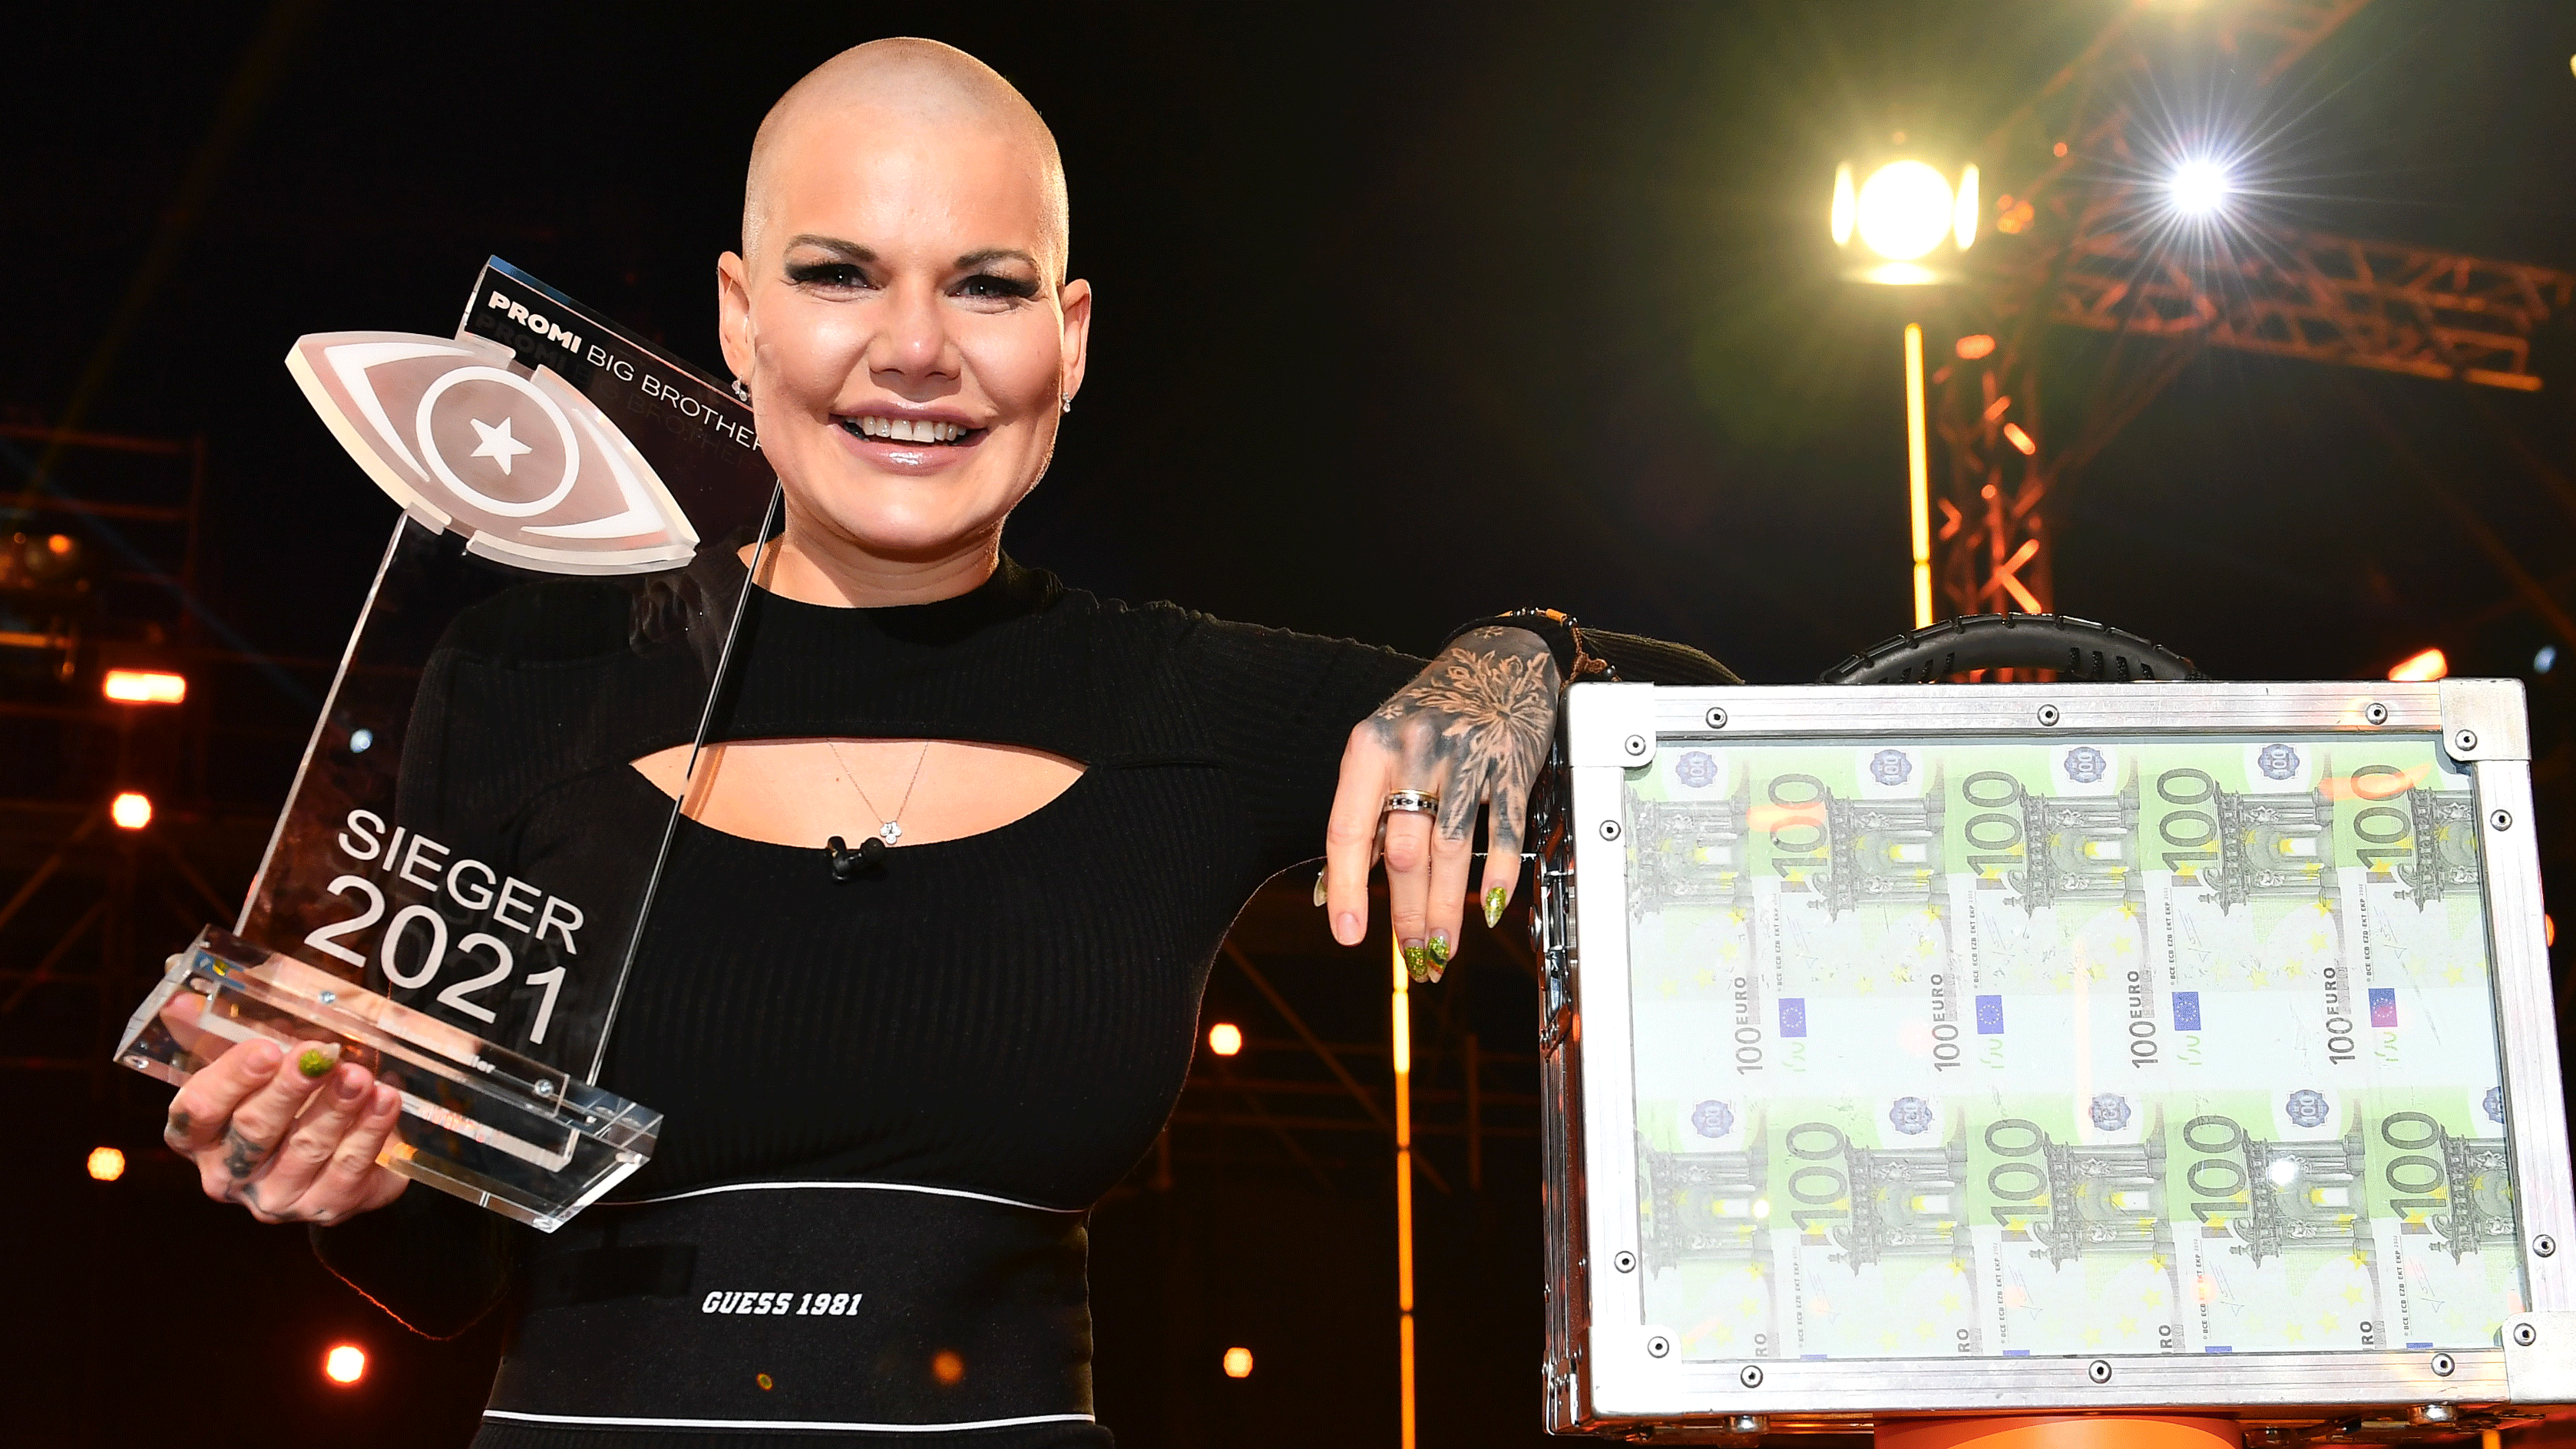 Melanie Müller gewinnt das Finale von "Promi Big Brother" 2021 - HERO